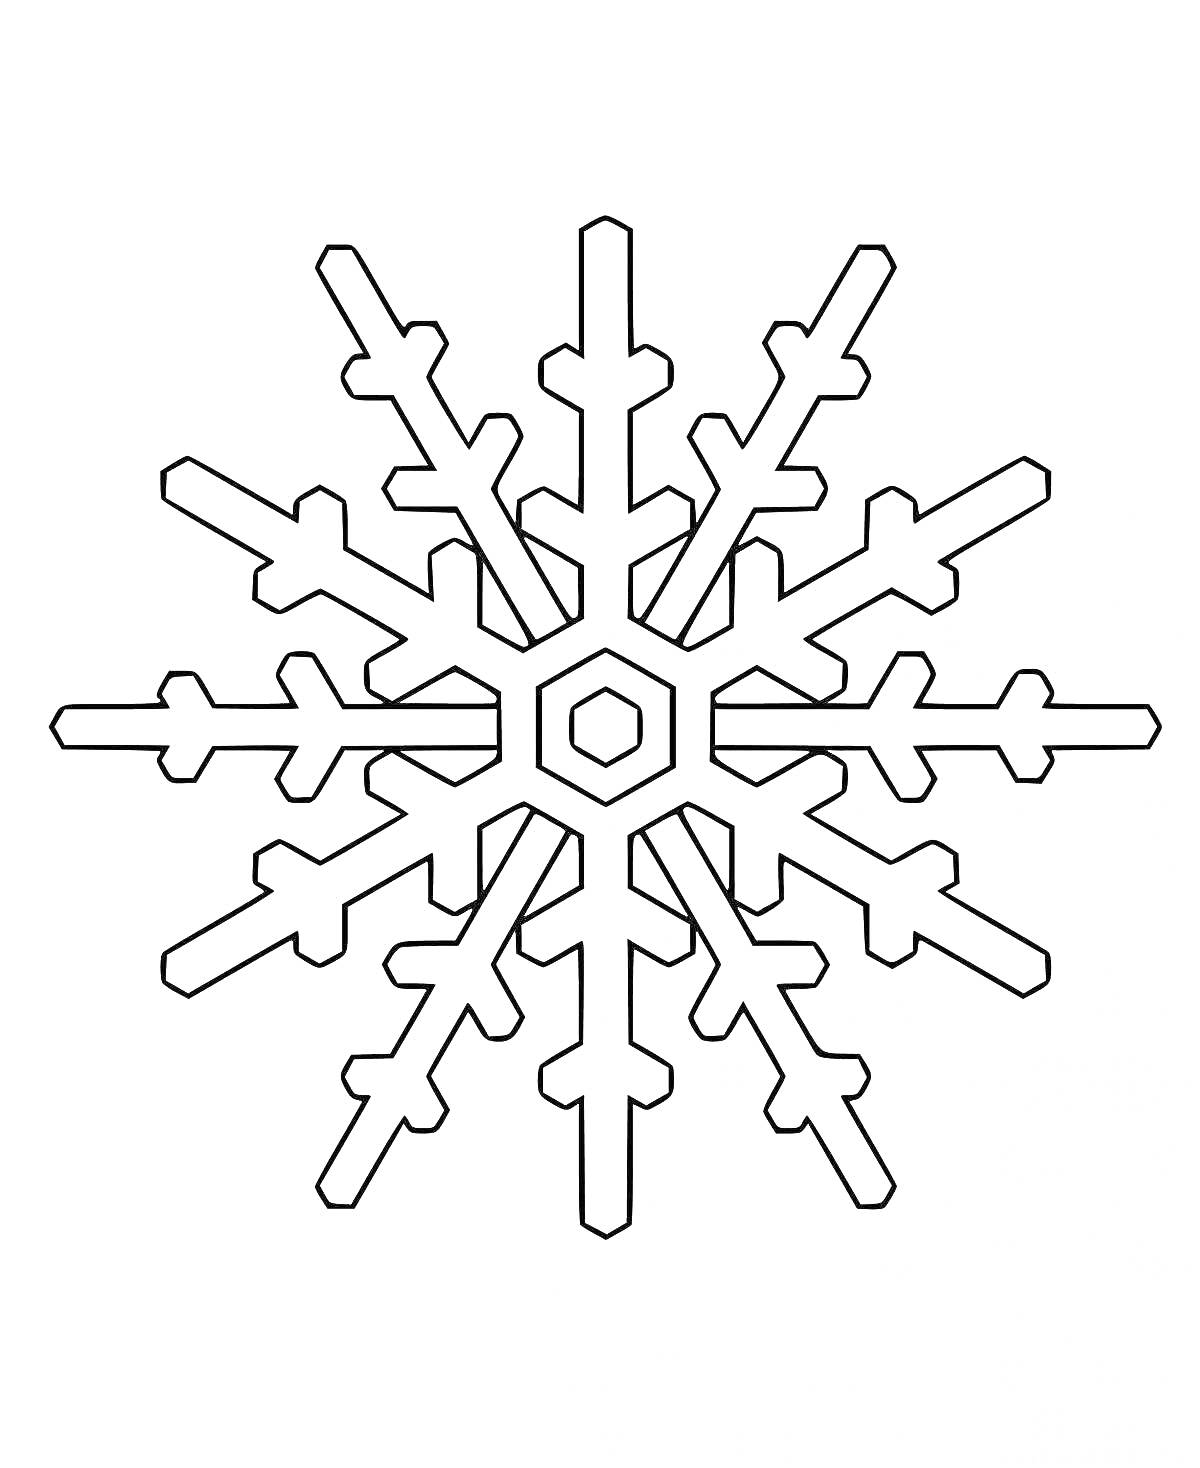 Раскраска Снежинка с геометрическим узором и шестью лучами